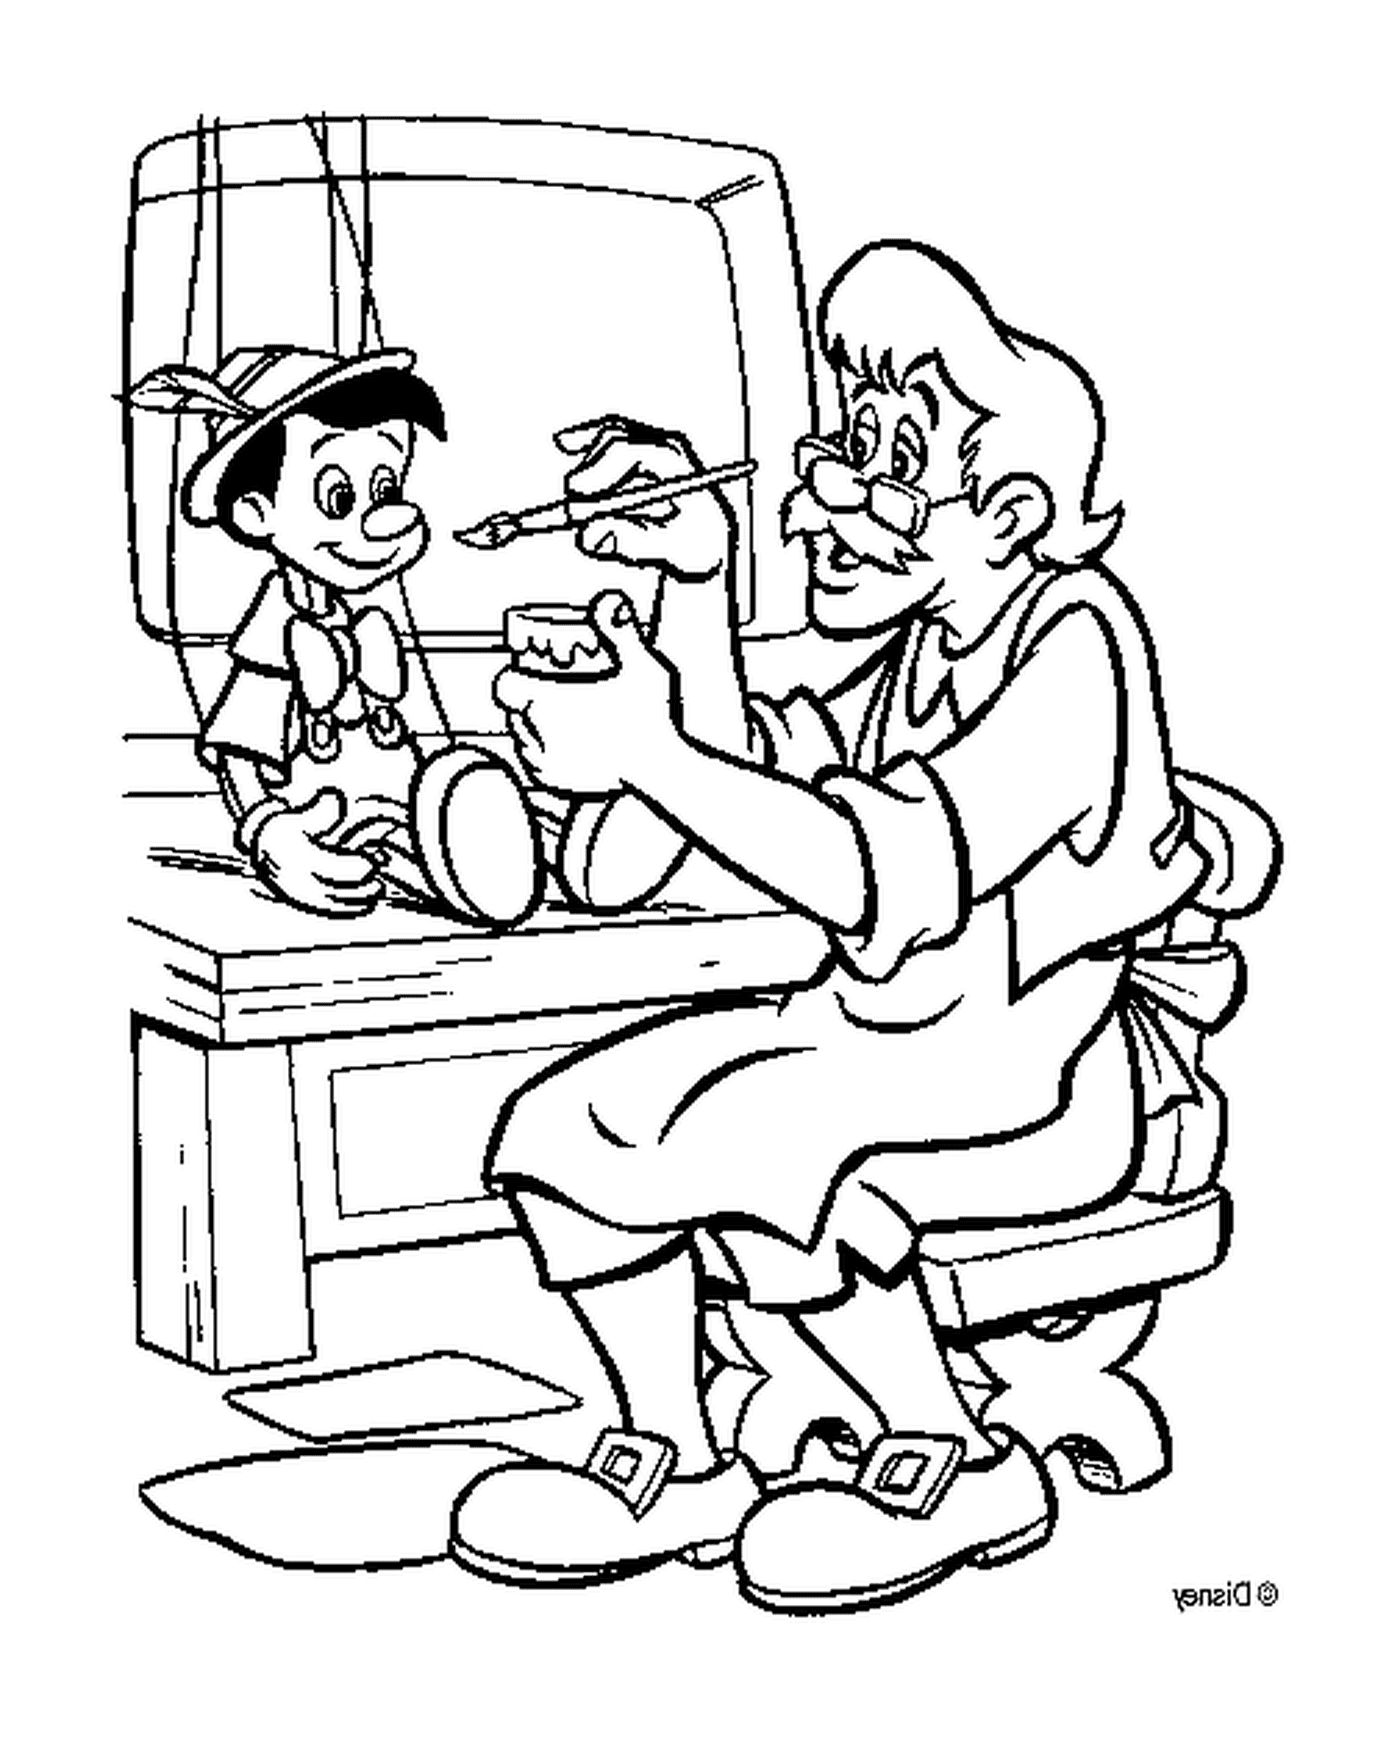  Джеппетто производит Пиноккио в своей мастерской 